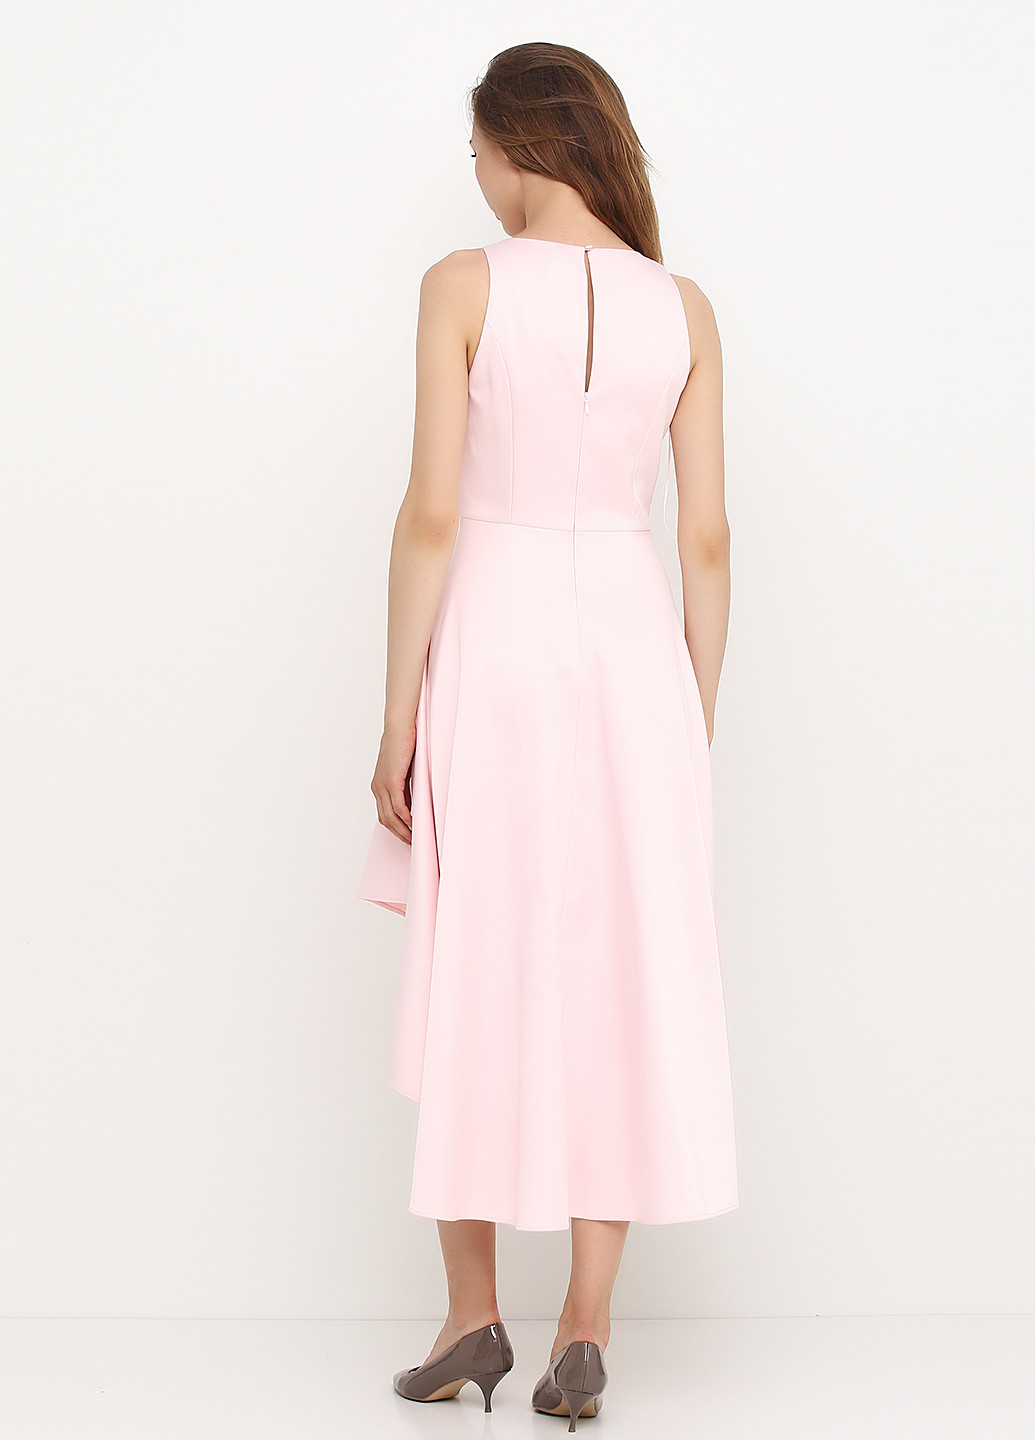 Світло-рожева коктейльна плаття, сукня з спідницею-сонце Mint & Berry однотонна